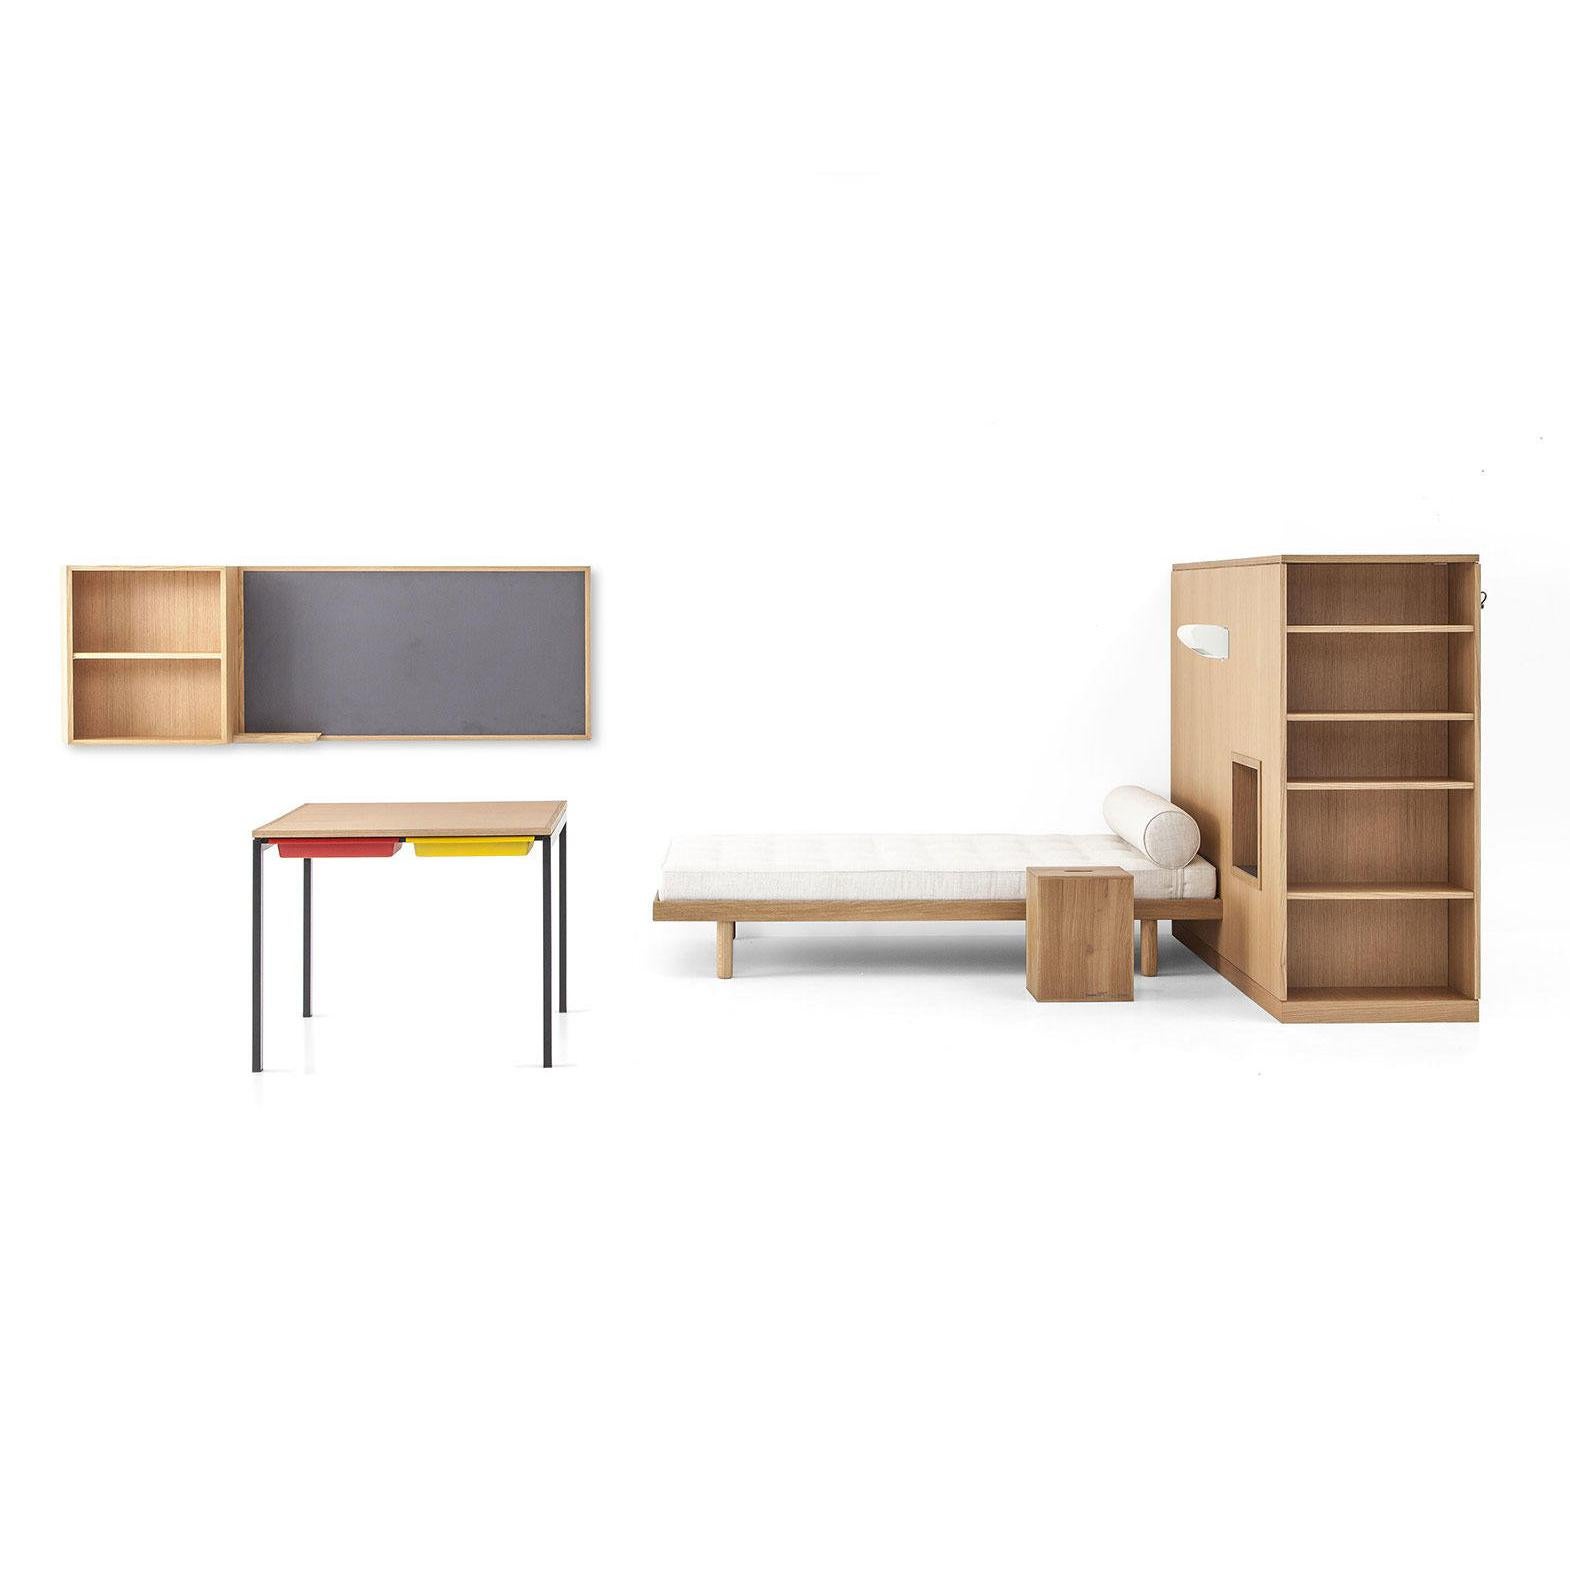 Reproduktion eines Studentenzimmers im Maison du Brésil, bestehend aus einem Schrank-Raumteiler, einem Bett, einem Schreibtisch, dem Maison du Bresil-Hocker sowie einem wandhängenden Bücherregal und einer Wandtafel. Bühnenbild von Le Corbusier und